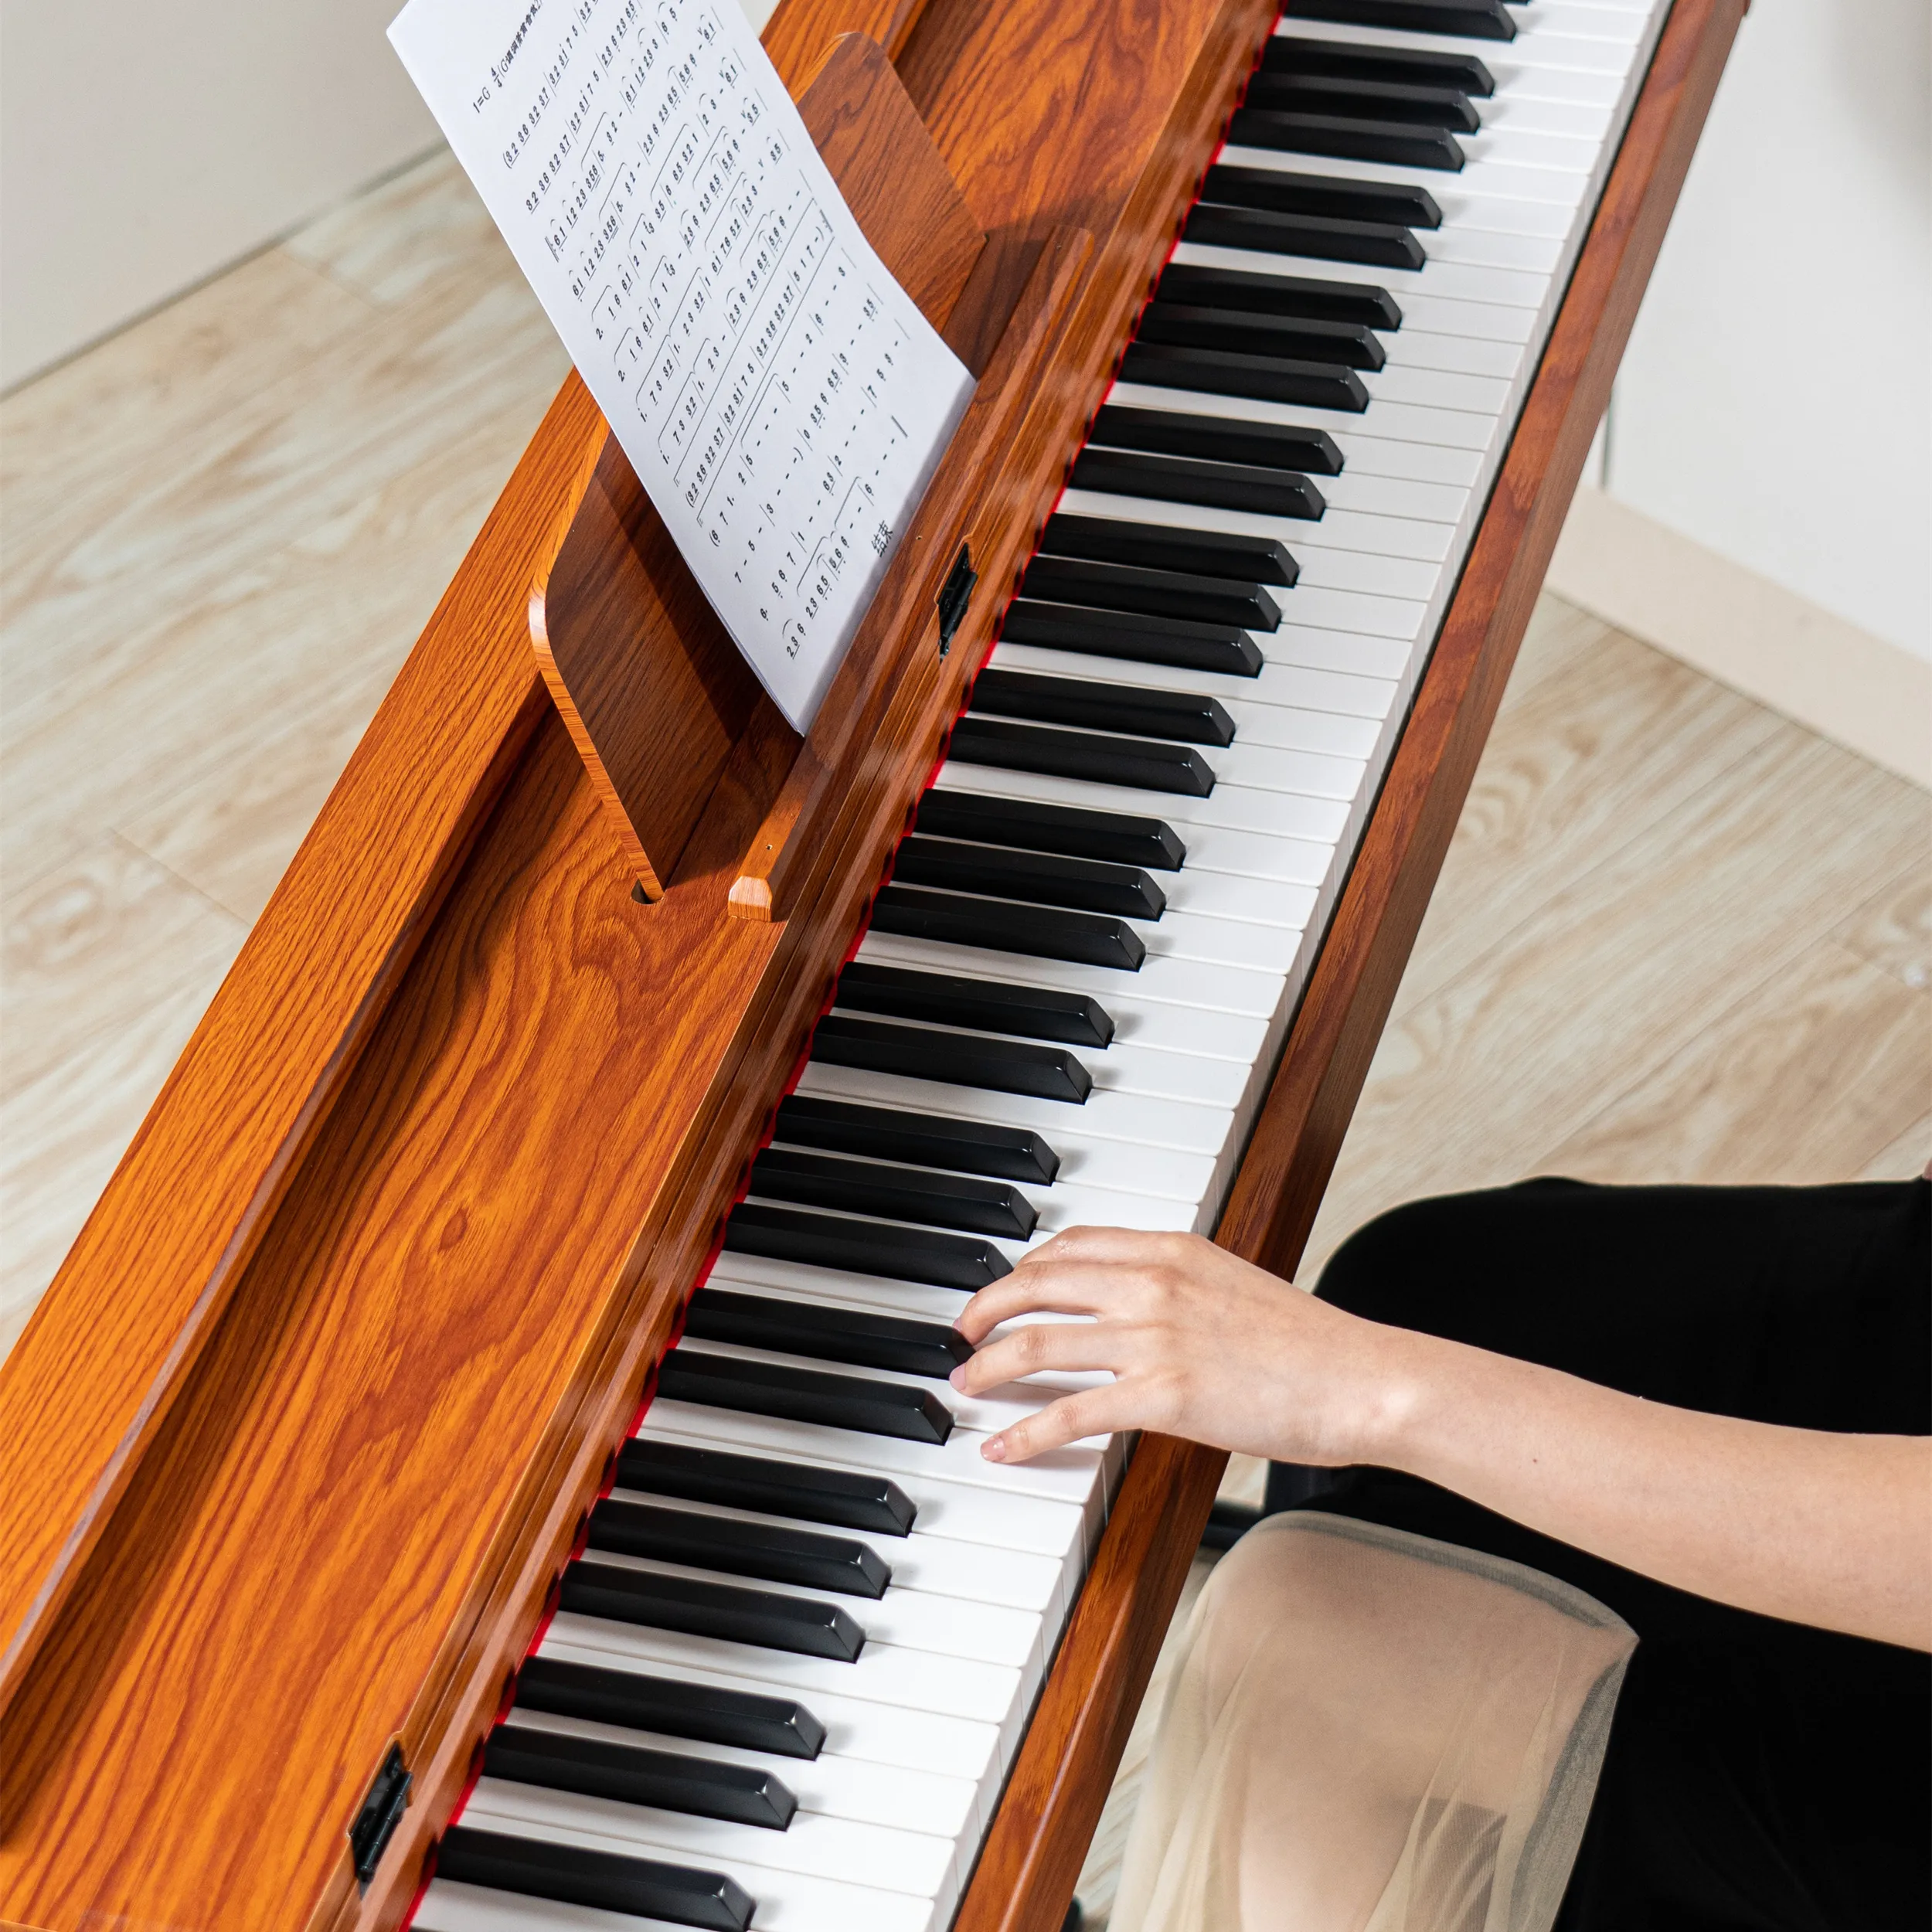 BDMUSIC جديد بيانو الخشب 88 مفاتيح مطرقة العمل مفاتيح البيانو المرجح لوحة مفاتيح البيانو الصين المزج مع غطاء خشبي